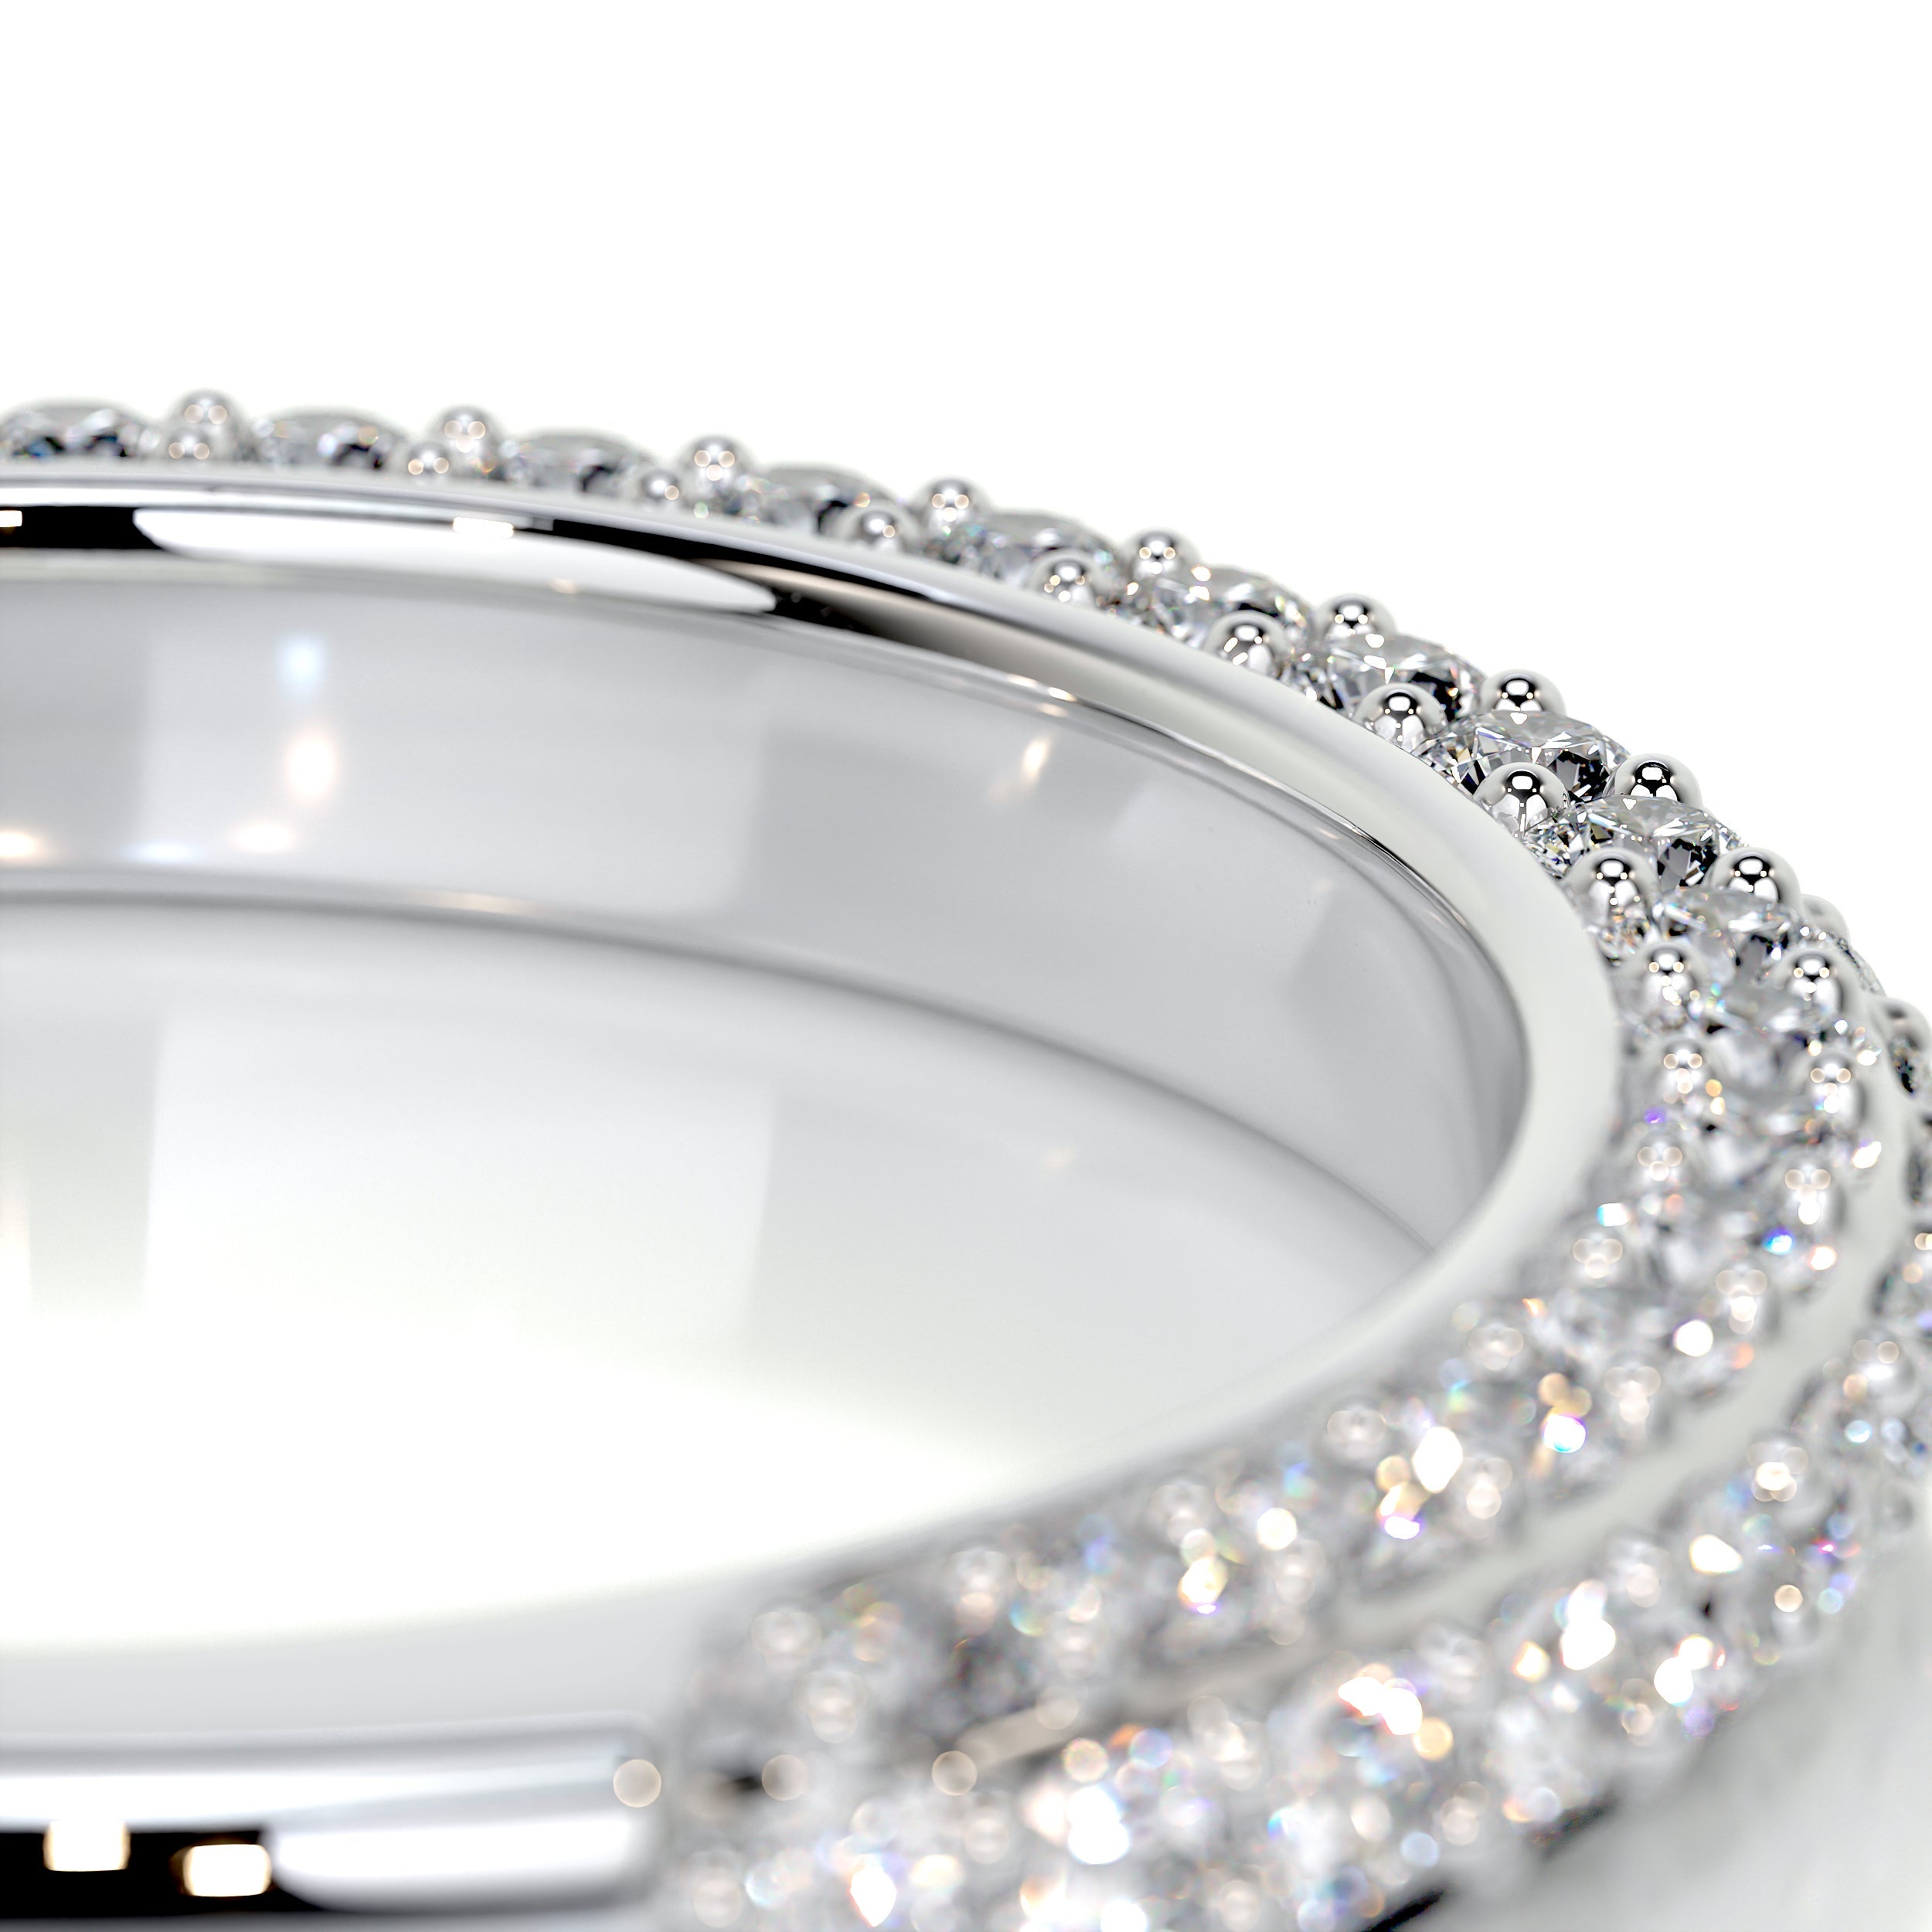 Anastasia Pave Diamond Wedding Ring   (0.75 Carat) -Platinum (RTS)